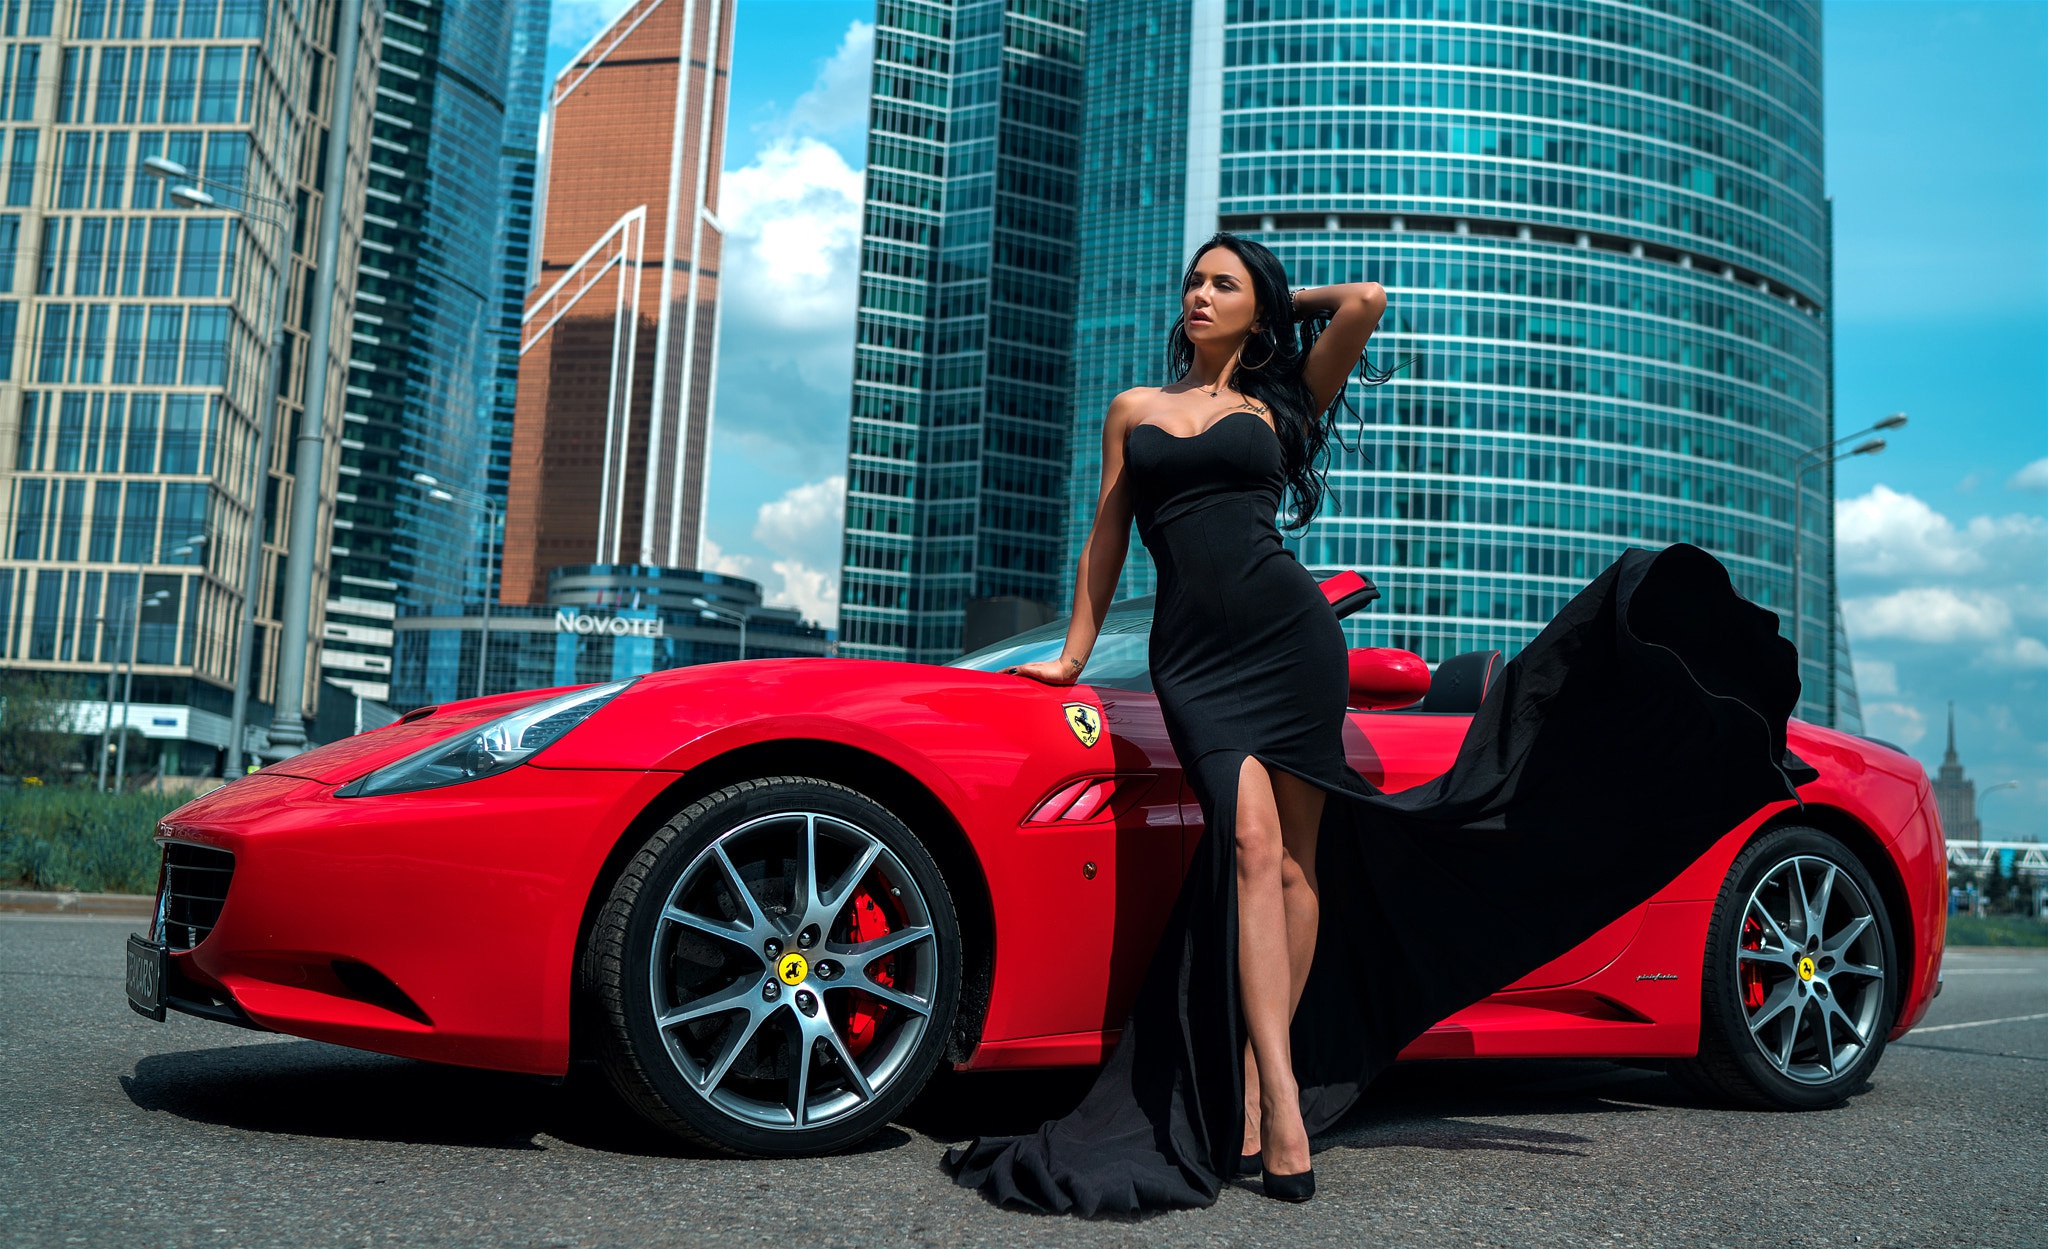 Descarga gratuita de fondo de pantalla para móvil de Ferrari, Coche, Modelo, Mujeres, Pelo Negro, Vestido Negro, Chicas & Coches.